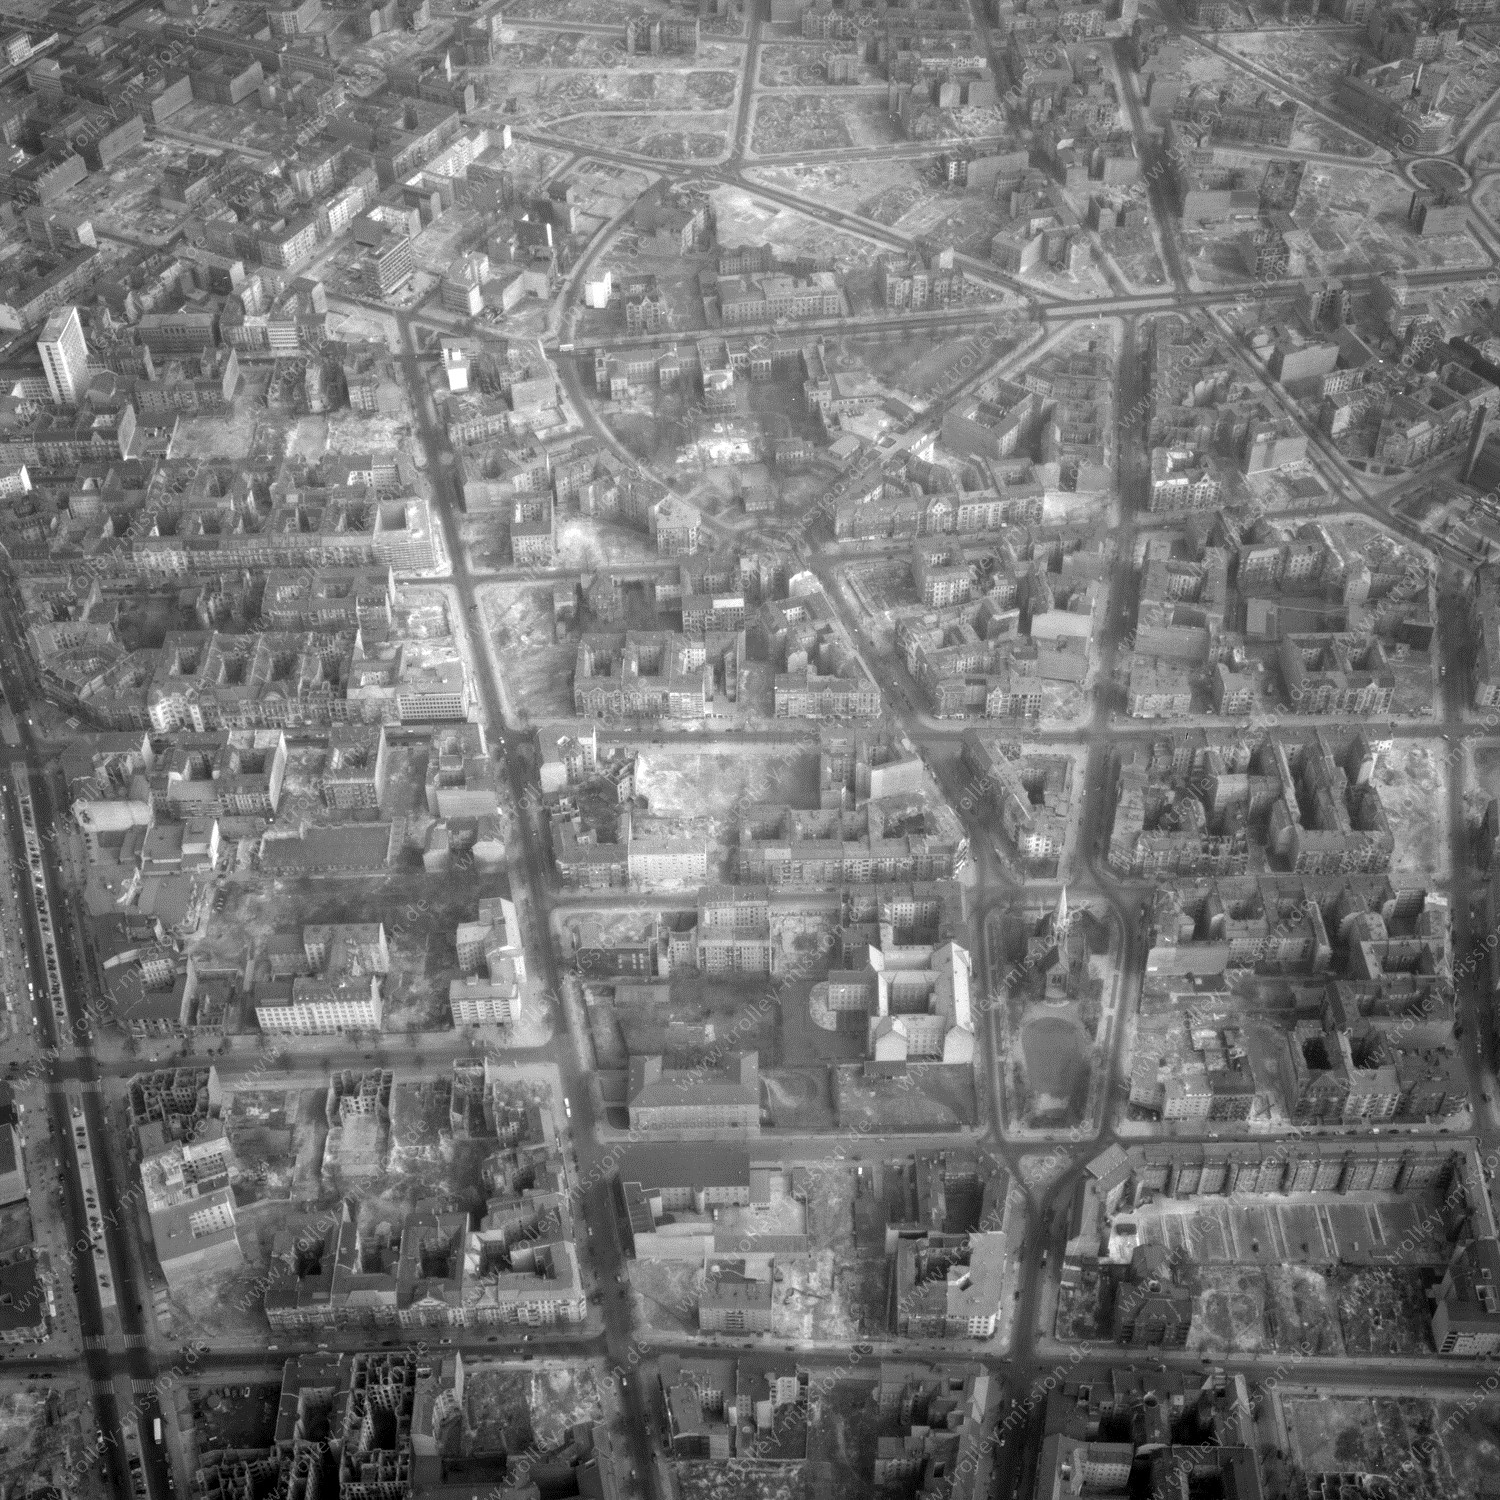 Alte Fotos und Luftbilder von Berlin - Luftbildaufnahme Nr. 10 - Historische Luftaufnahmen von West-Berlin aus dem Jahr 1954 - Flugstrecke Delta